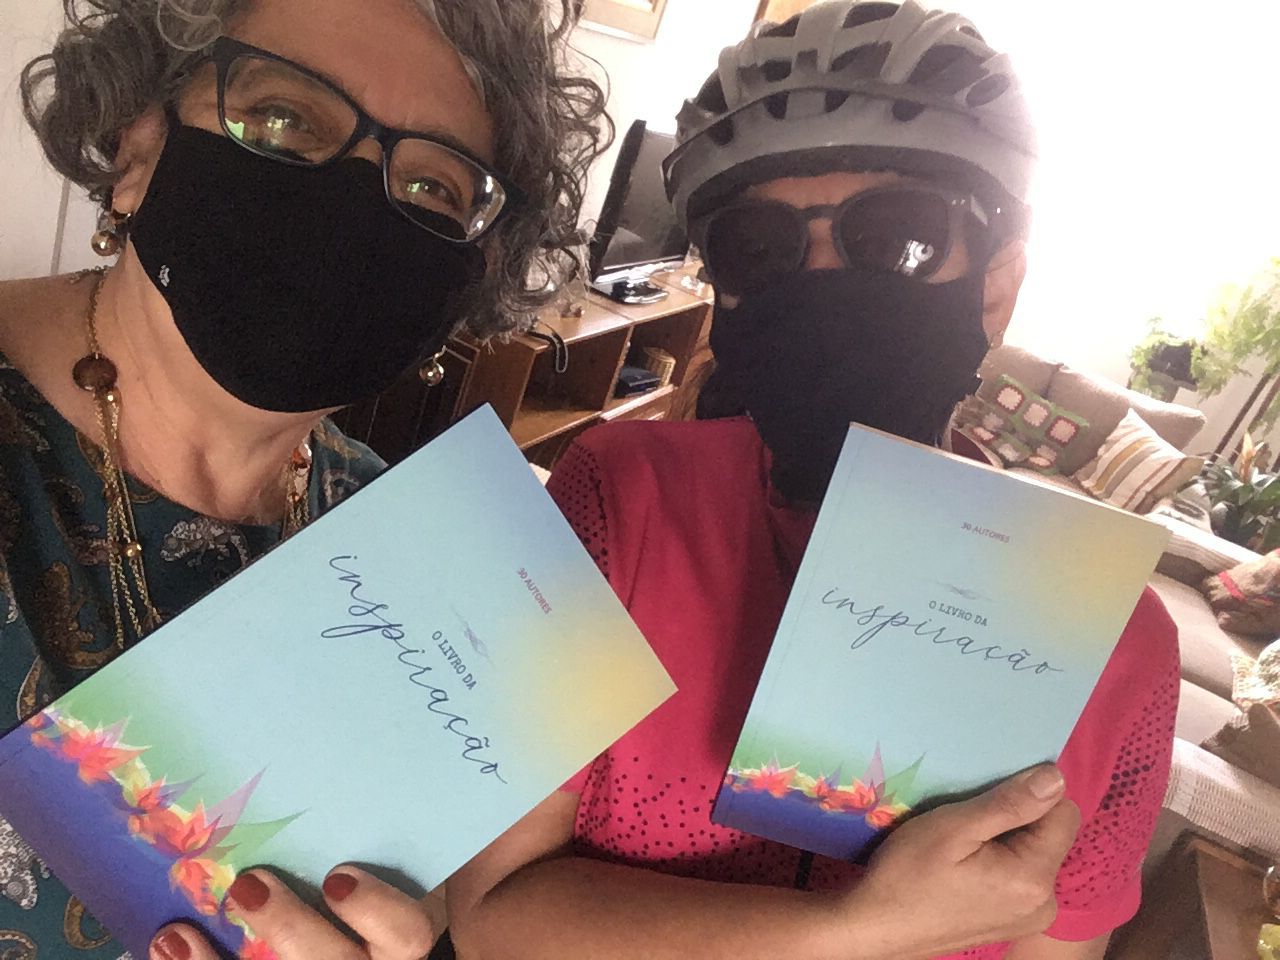 Silvia Angerami e Ana Monteiro, autora do livro, posam para foto com o livro. Ana está vestida com capacete e roupas de ciclista.